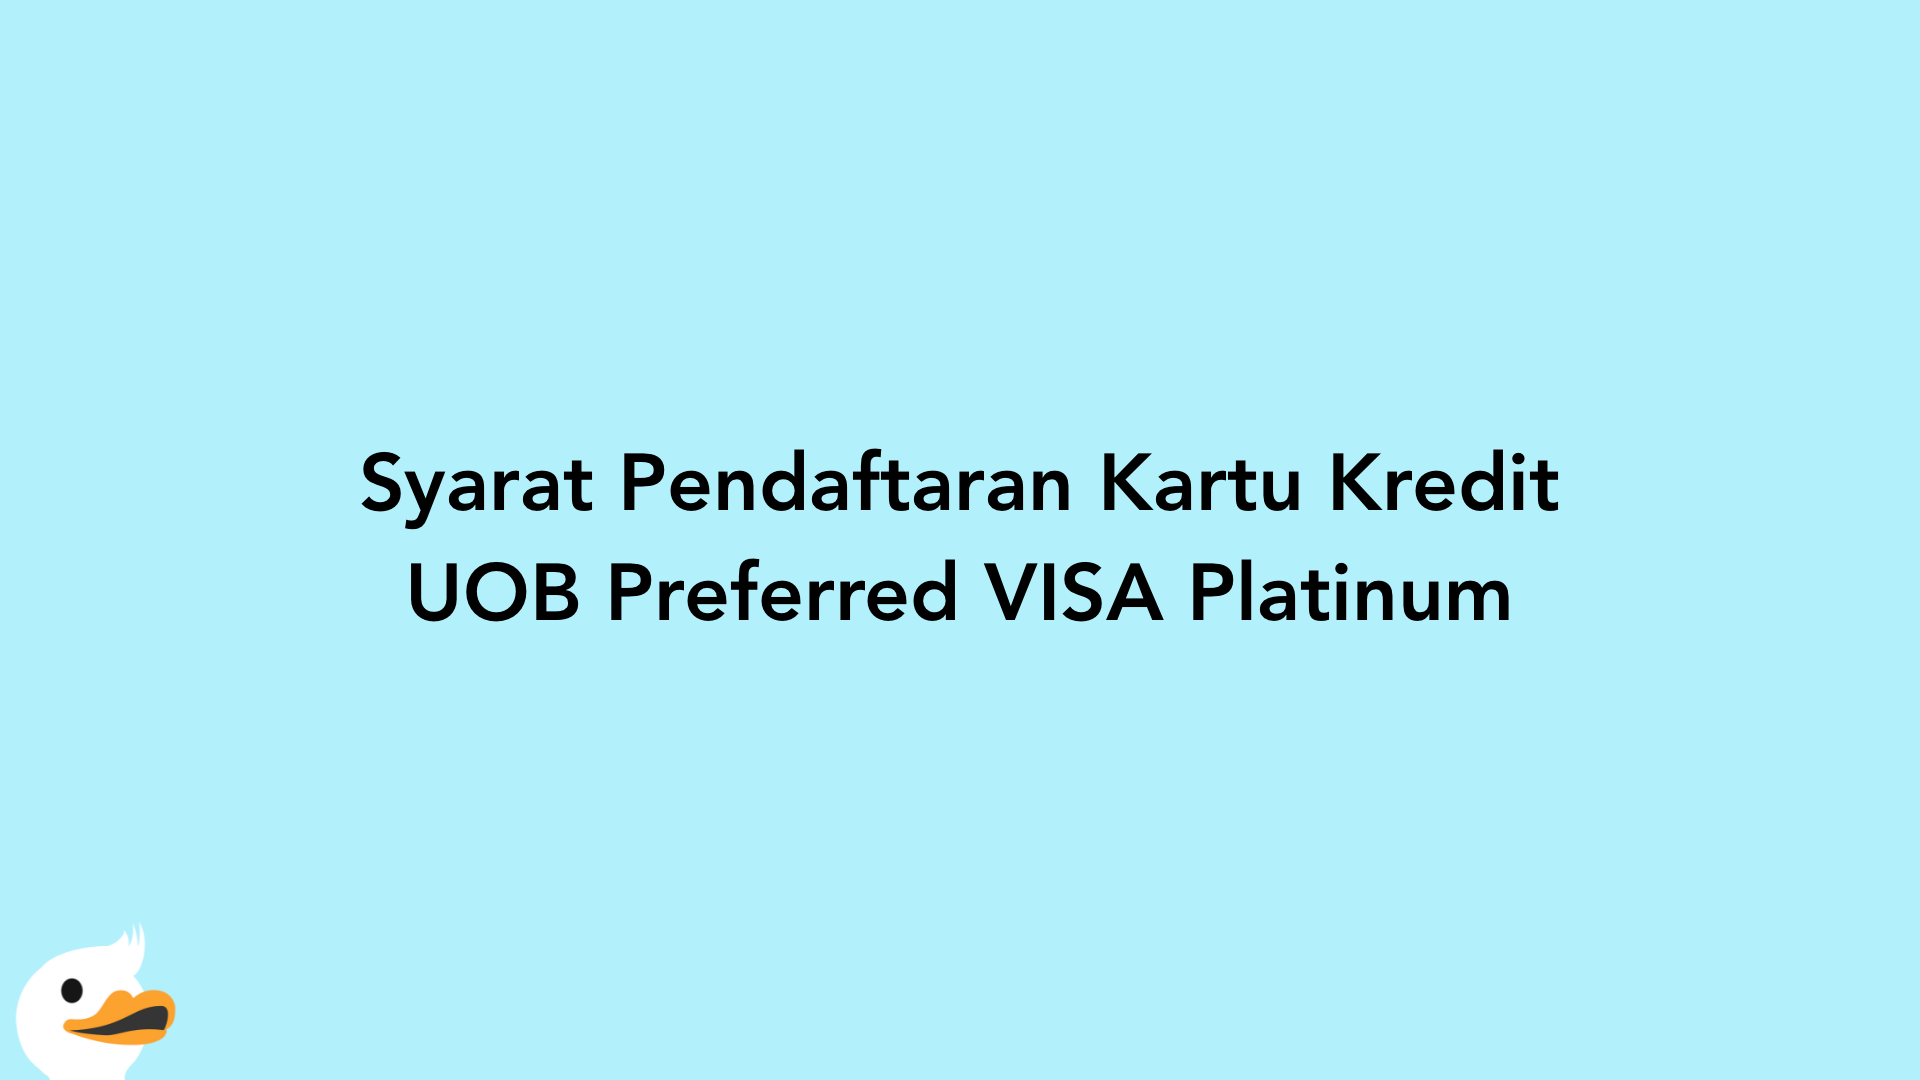 Syarat Pendaftaran Kartu Kredit UOB Preferred VISA Platinum